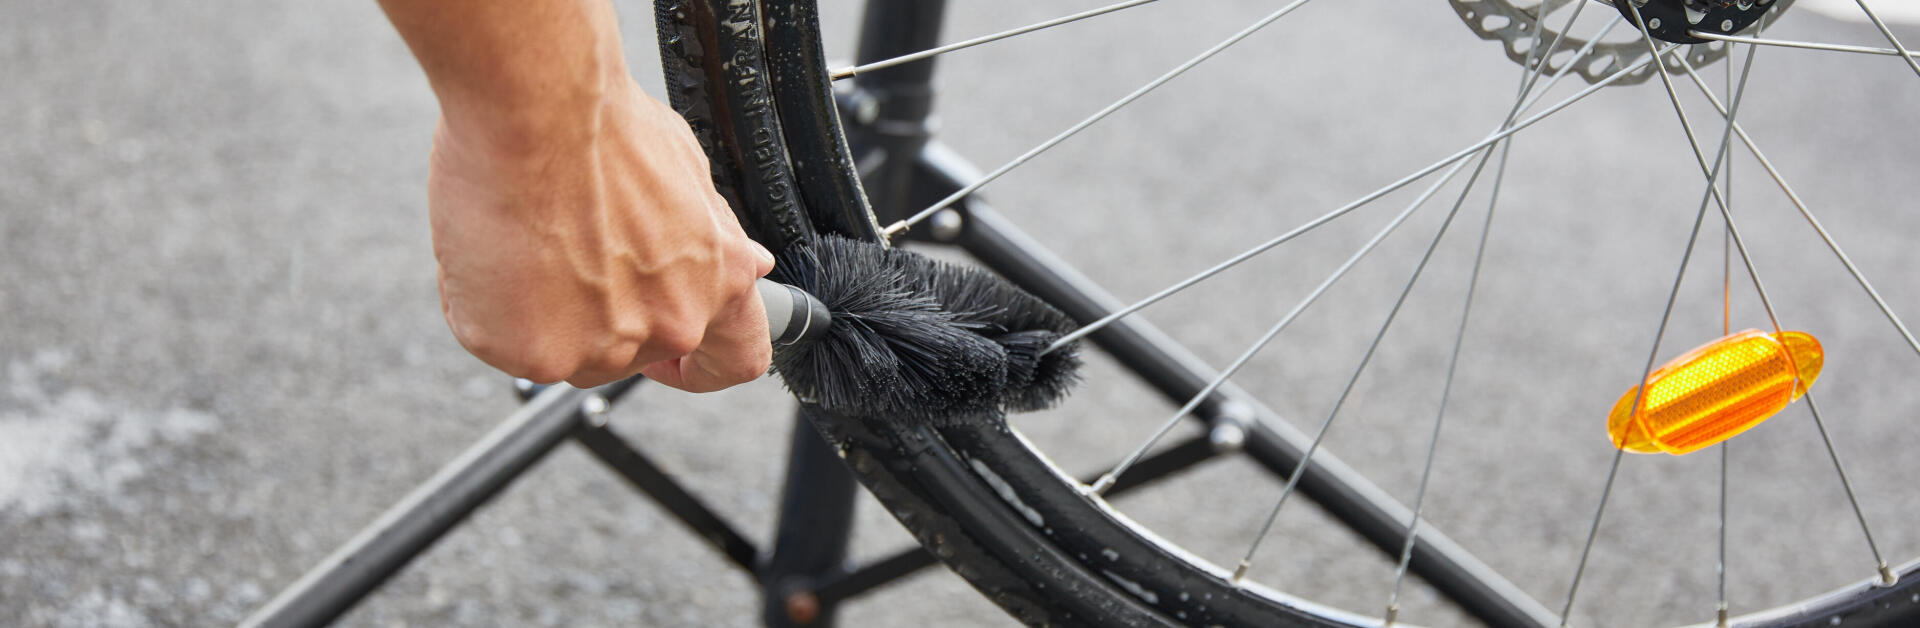 Come riparare un raggio della ruota della bici?